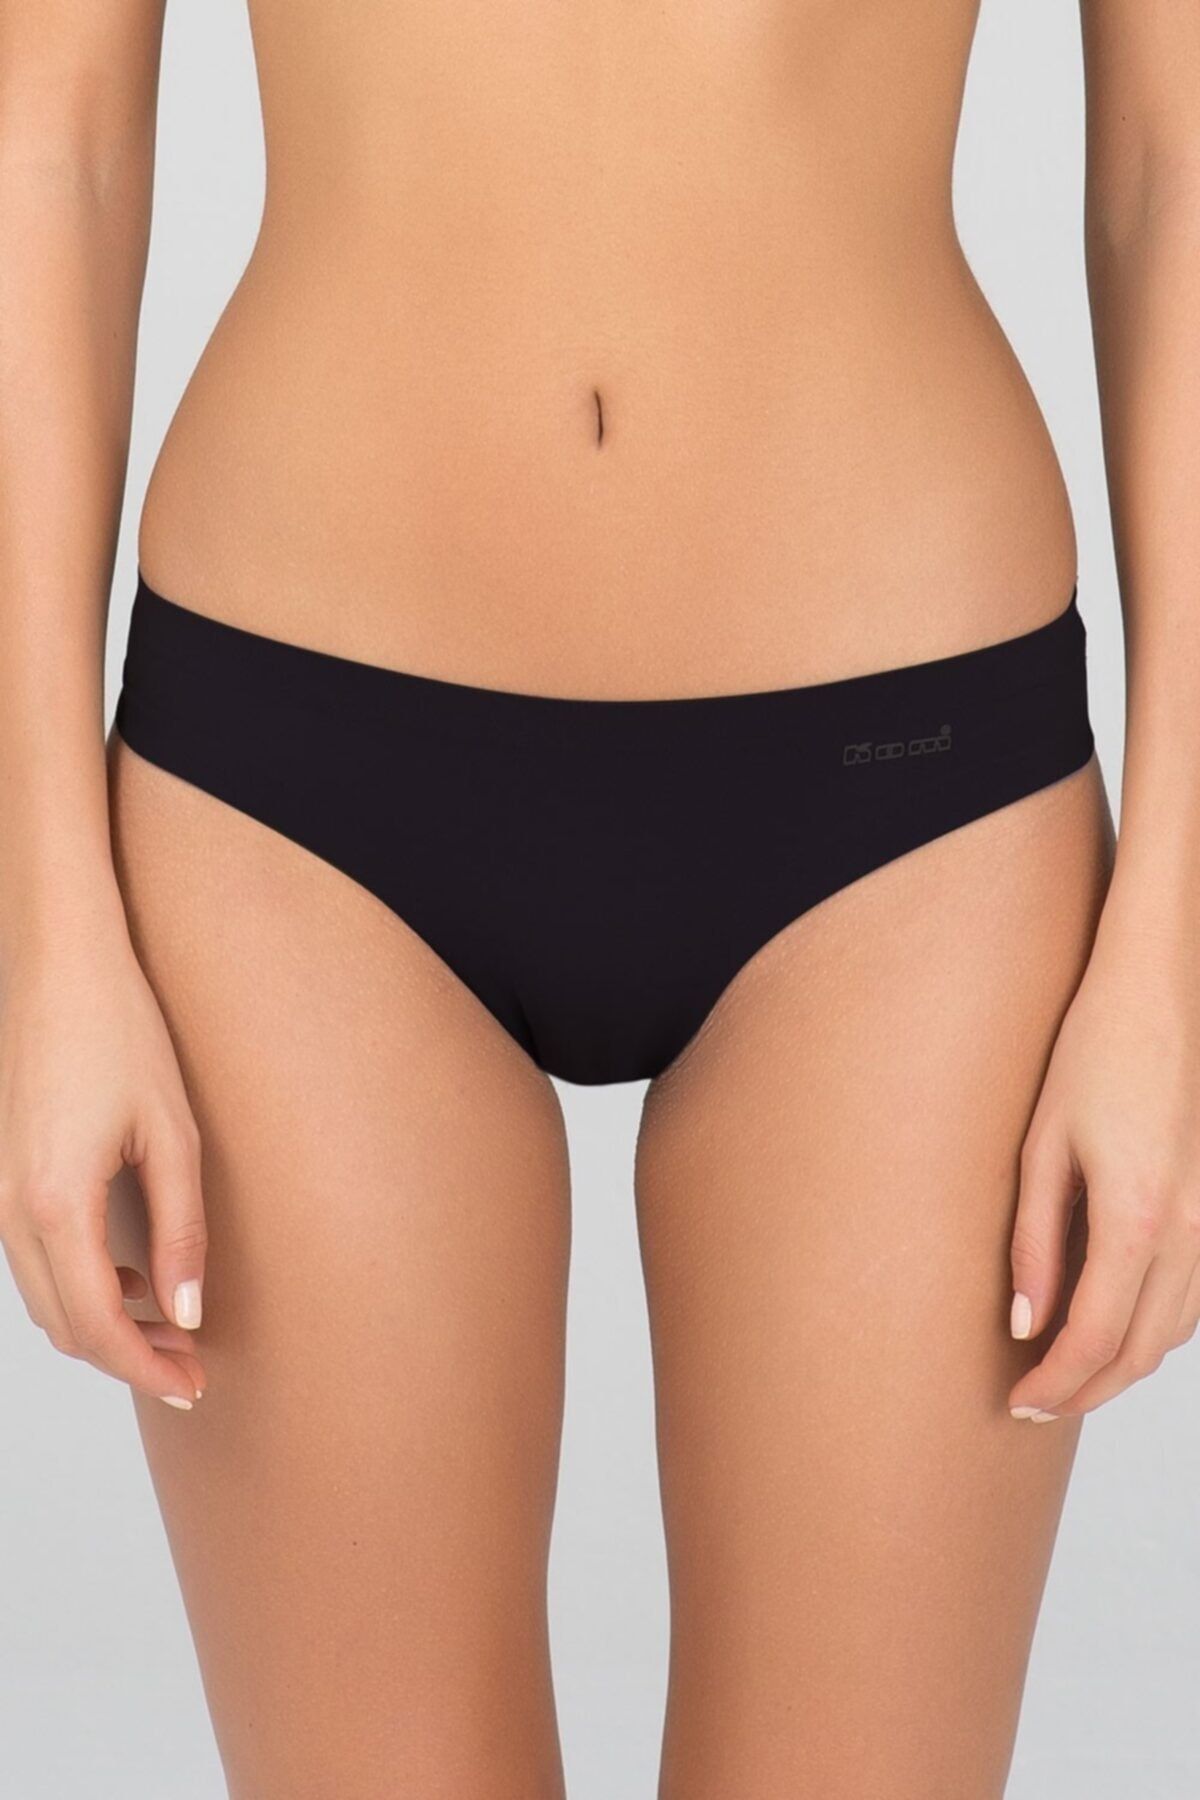 Kom Kadın Mikro Modal Dikişsiz Izsiz Bikini Slip Külot 2 Li